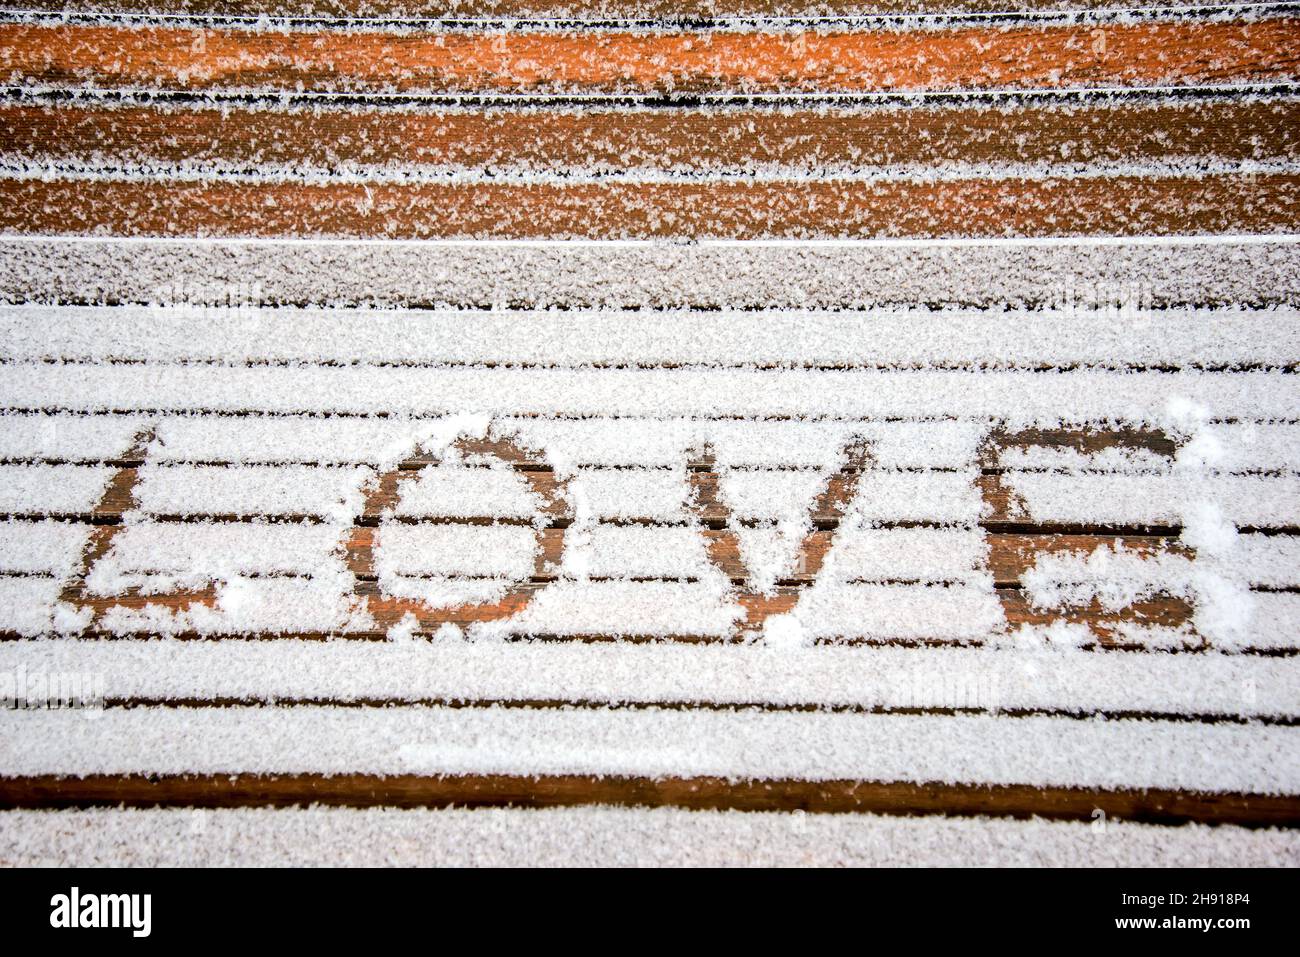 Das Wort LIEBE im Schnee auf einer Bank in einem Winterpark geschrieben Stockfoto